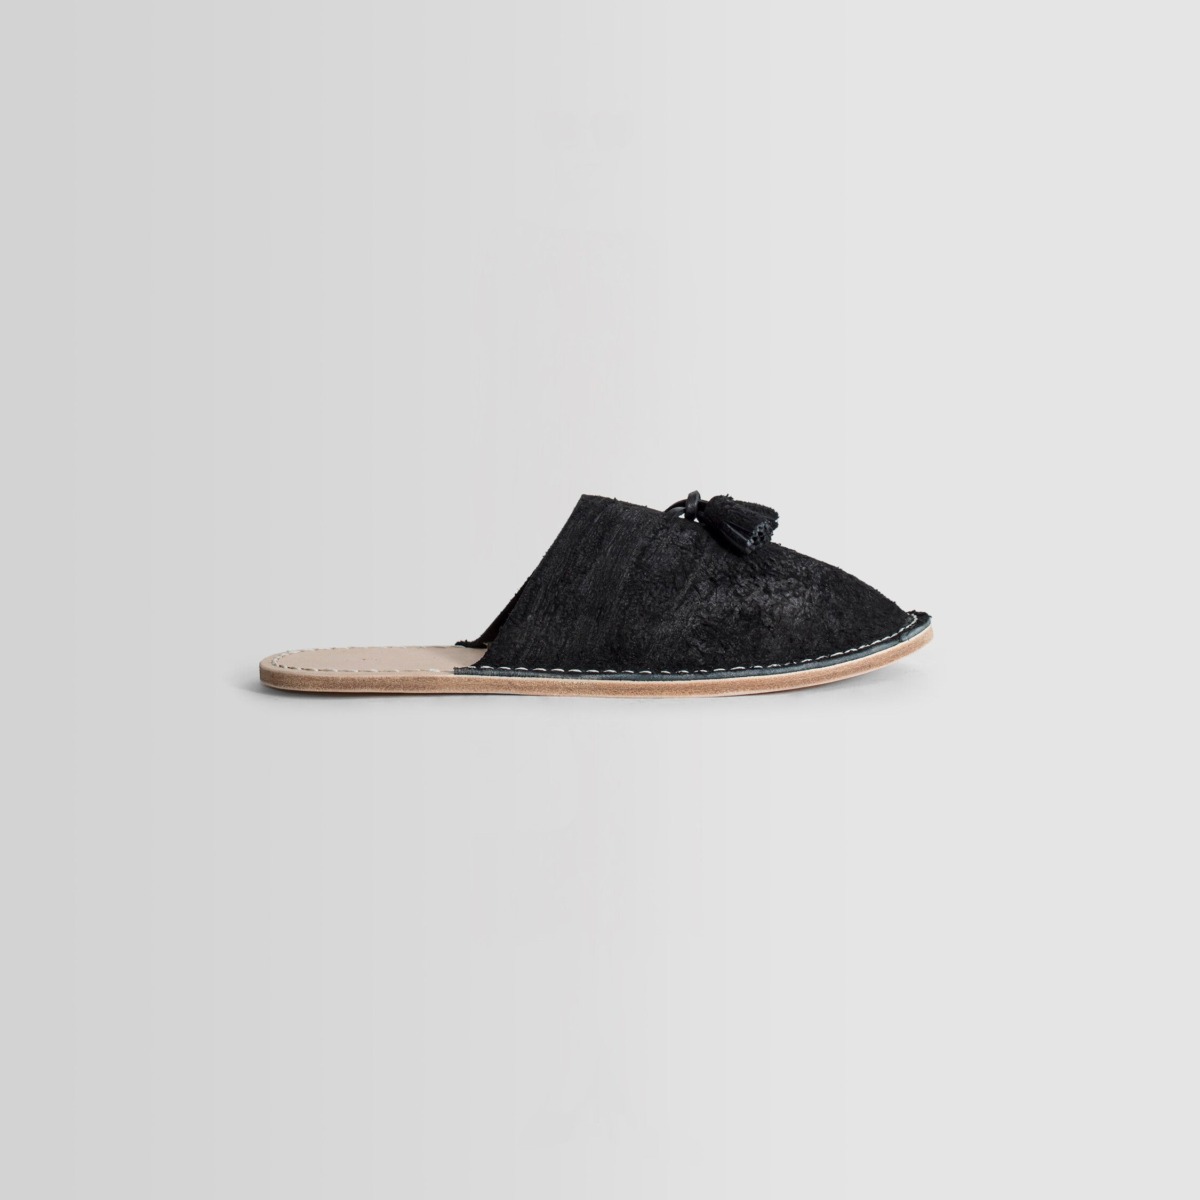 Antonioli Gents Black Loafers by Hender Scheme GOOFASH